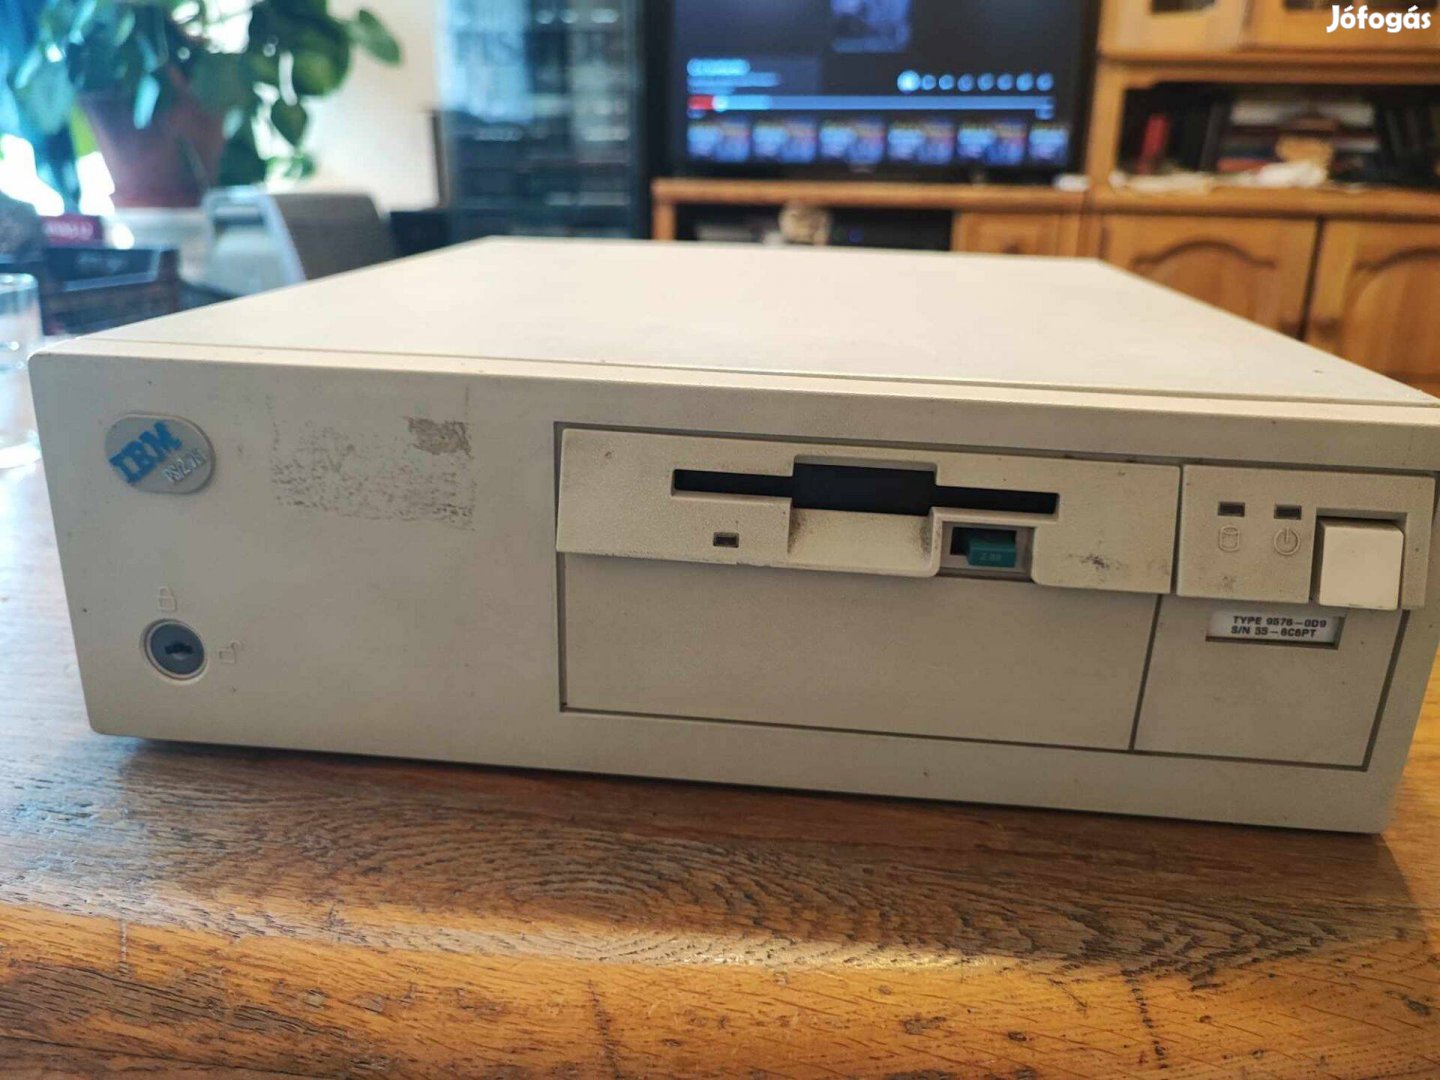 IBM PS/2 76i